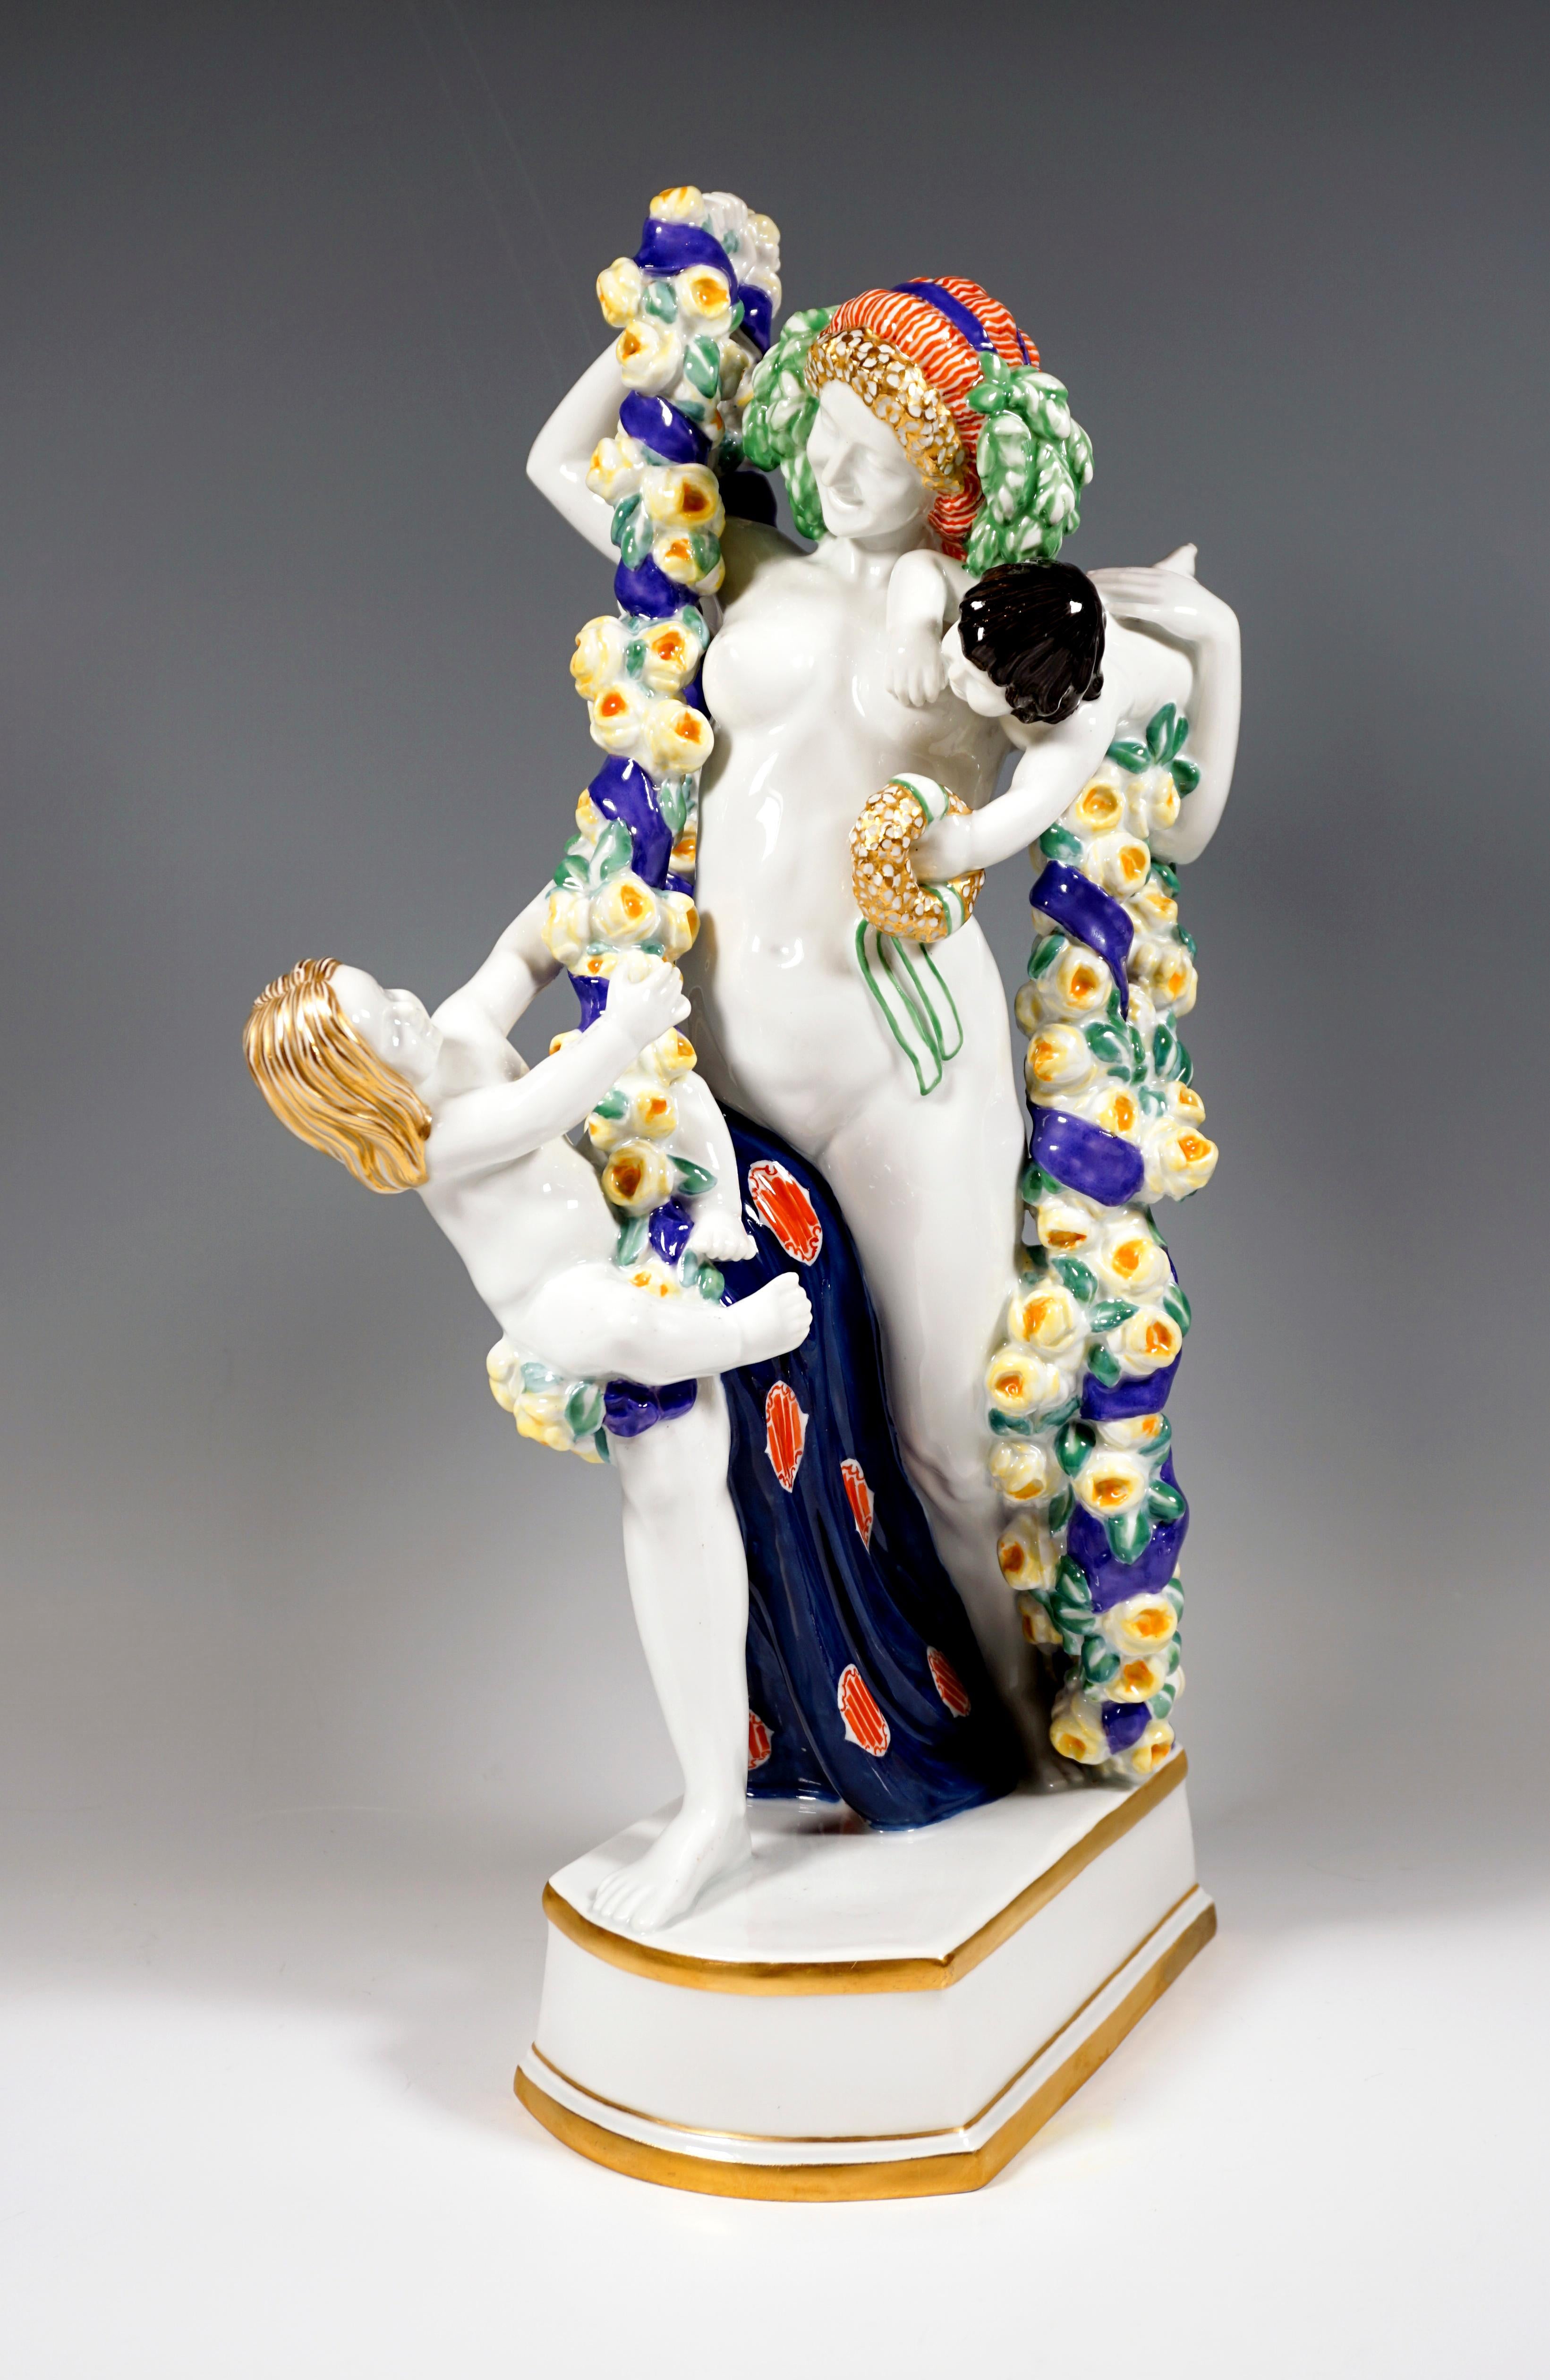 Äußerst seltene Jugendstil-Figurengruppe von Meissen:
Monumentale Figur der Flora, die im Tanz einen Schritt nach vorne macht und große, schwere Blumengirlanden aus gelben Rosen, die mit einer blauen Schleife umwickelt sind, in den Händen hält. Das